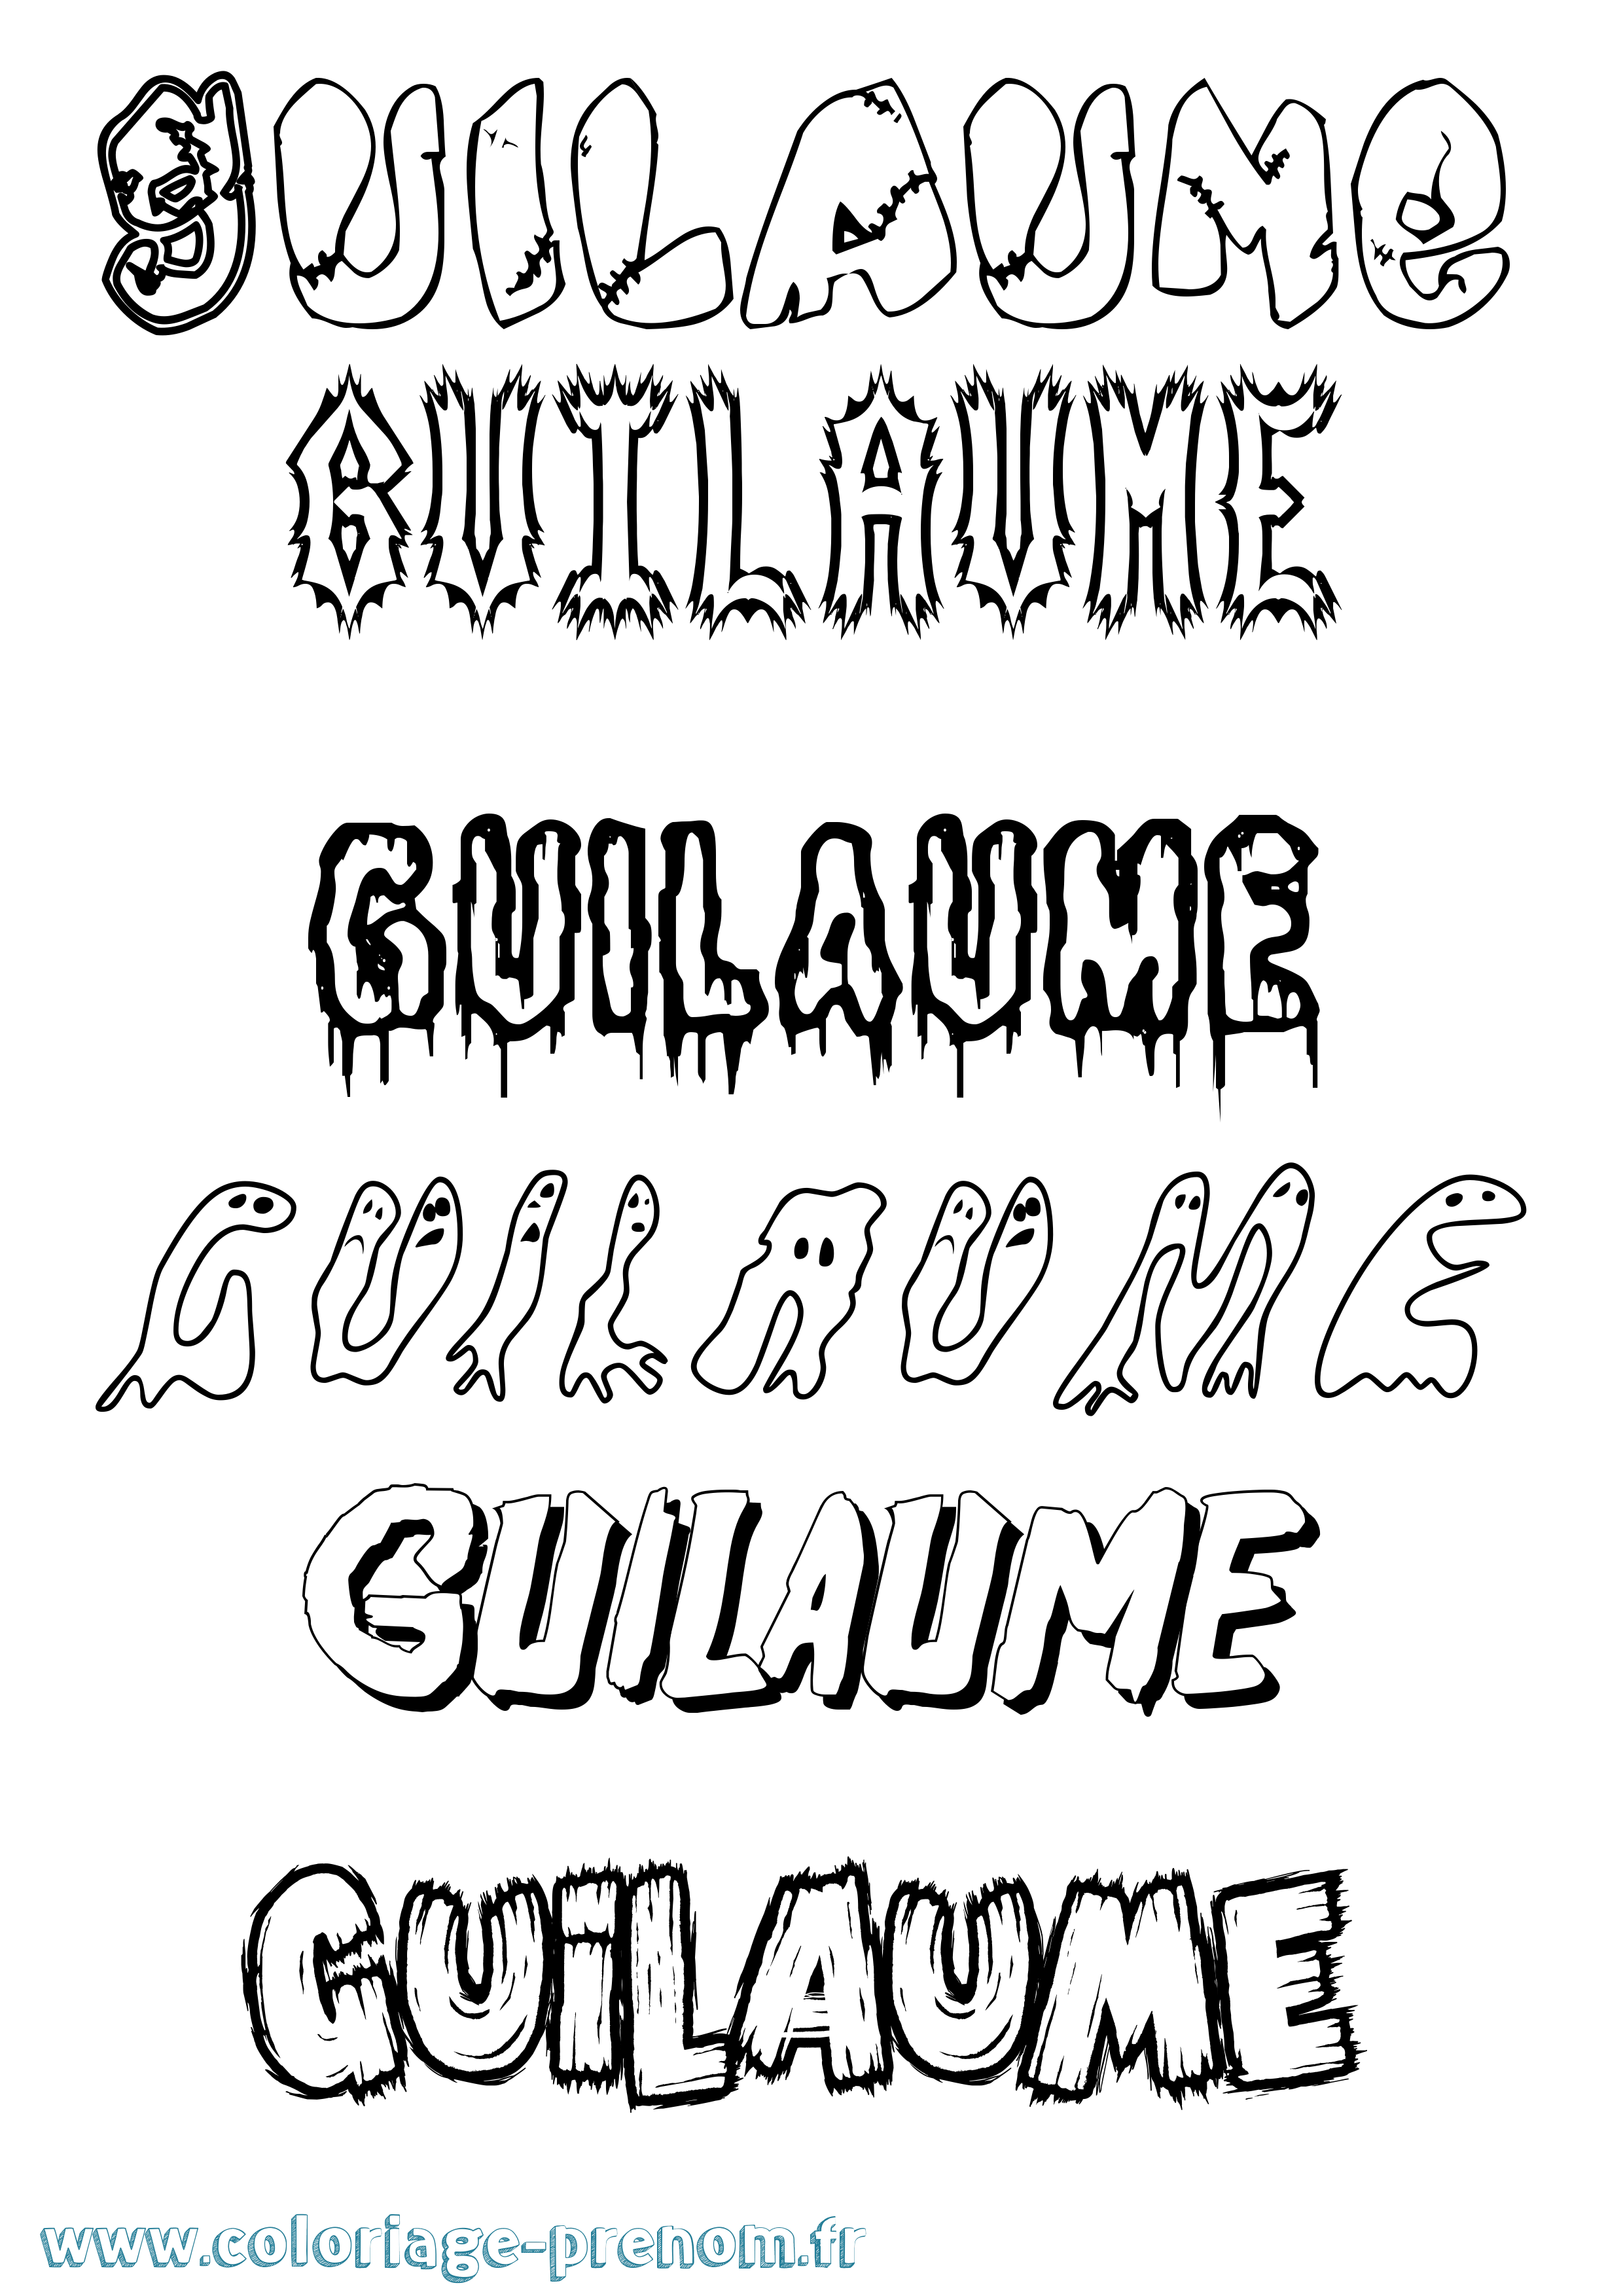 Coloriage prénom Guilaume Frisson